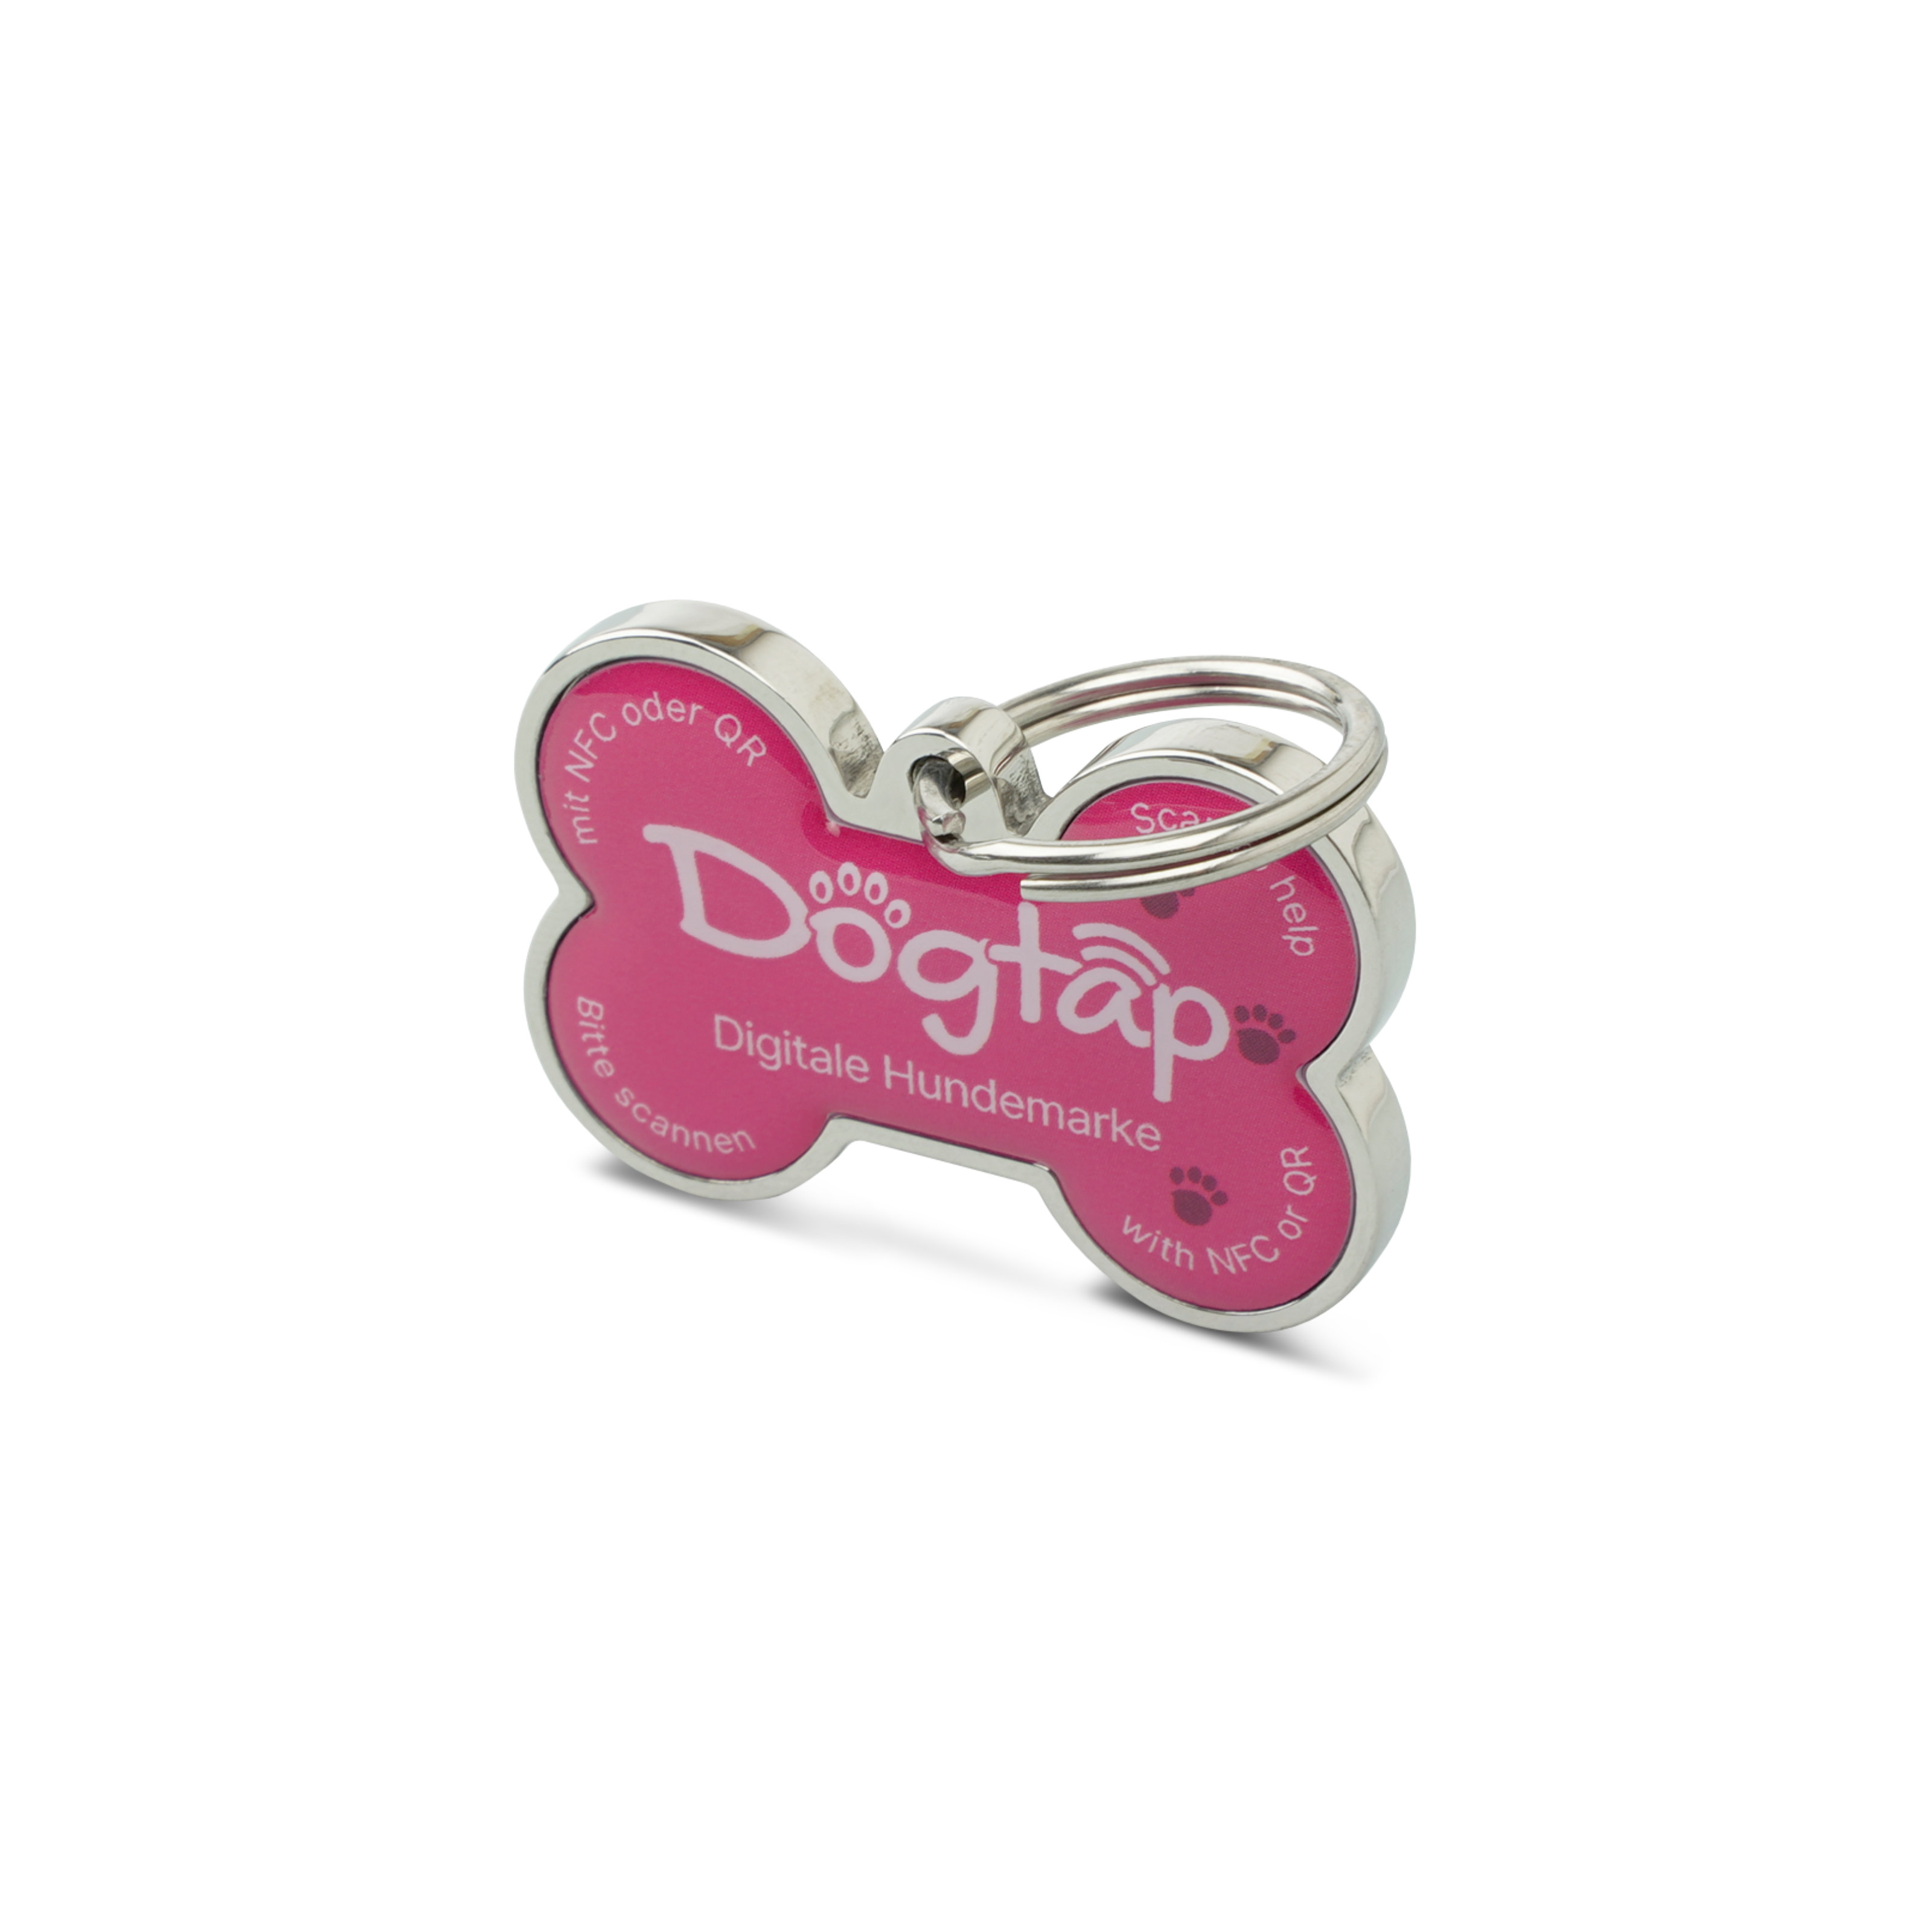 Dogtap Solid - Digital dog tag - PVC / Metal - 41.6 x 28.5 x 4.6 mm - pink